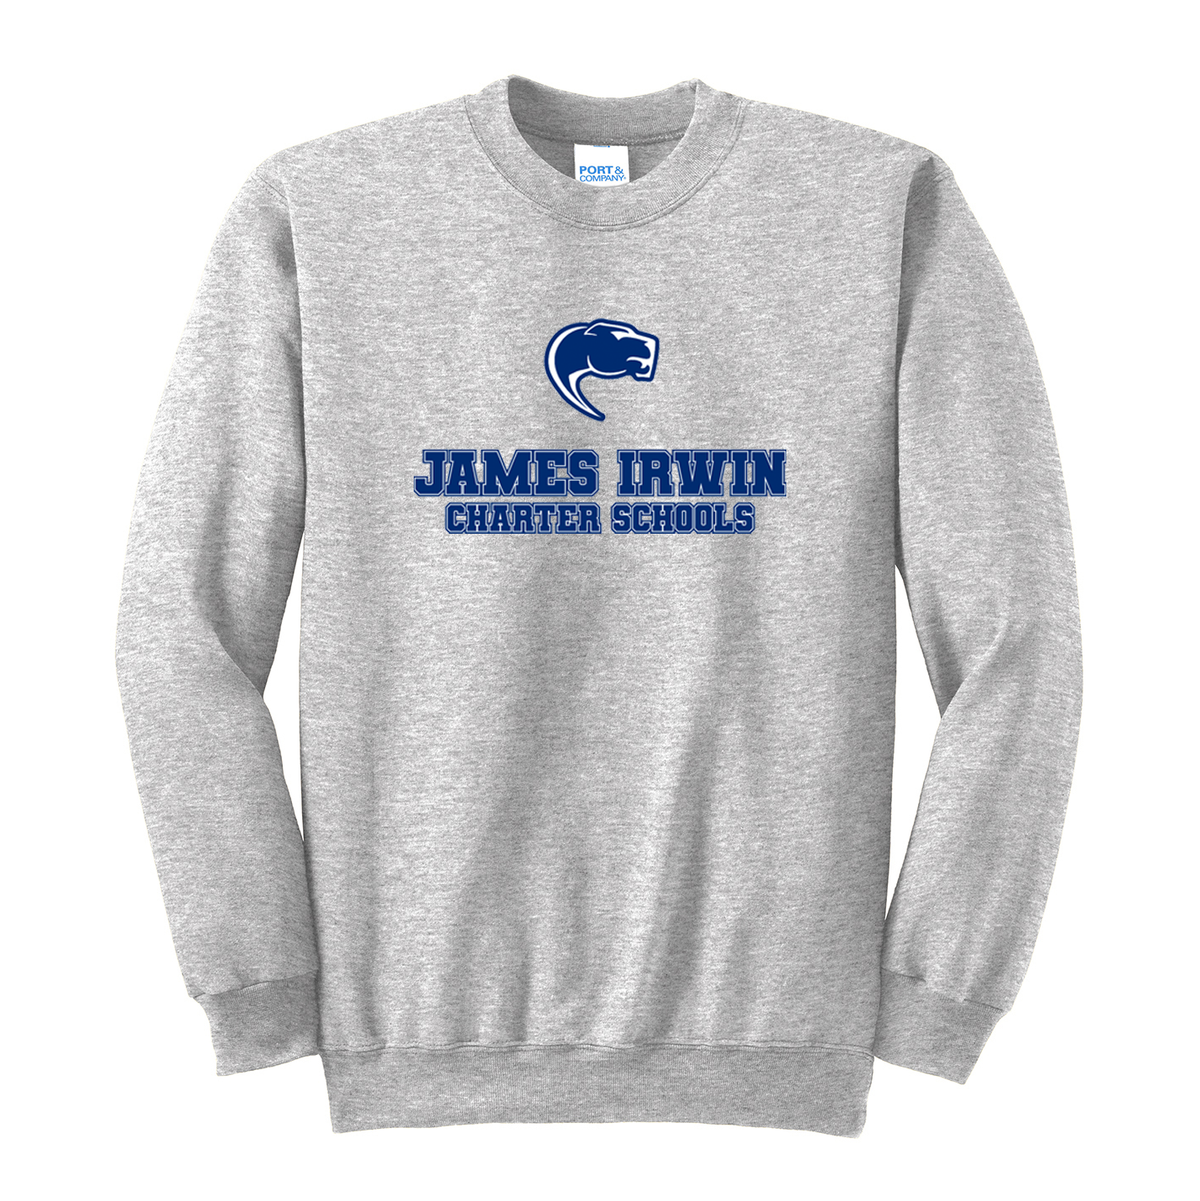 James Irwin Charter Schools Crew Neck Sweater